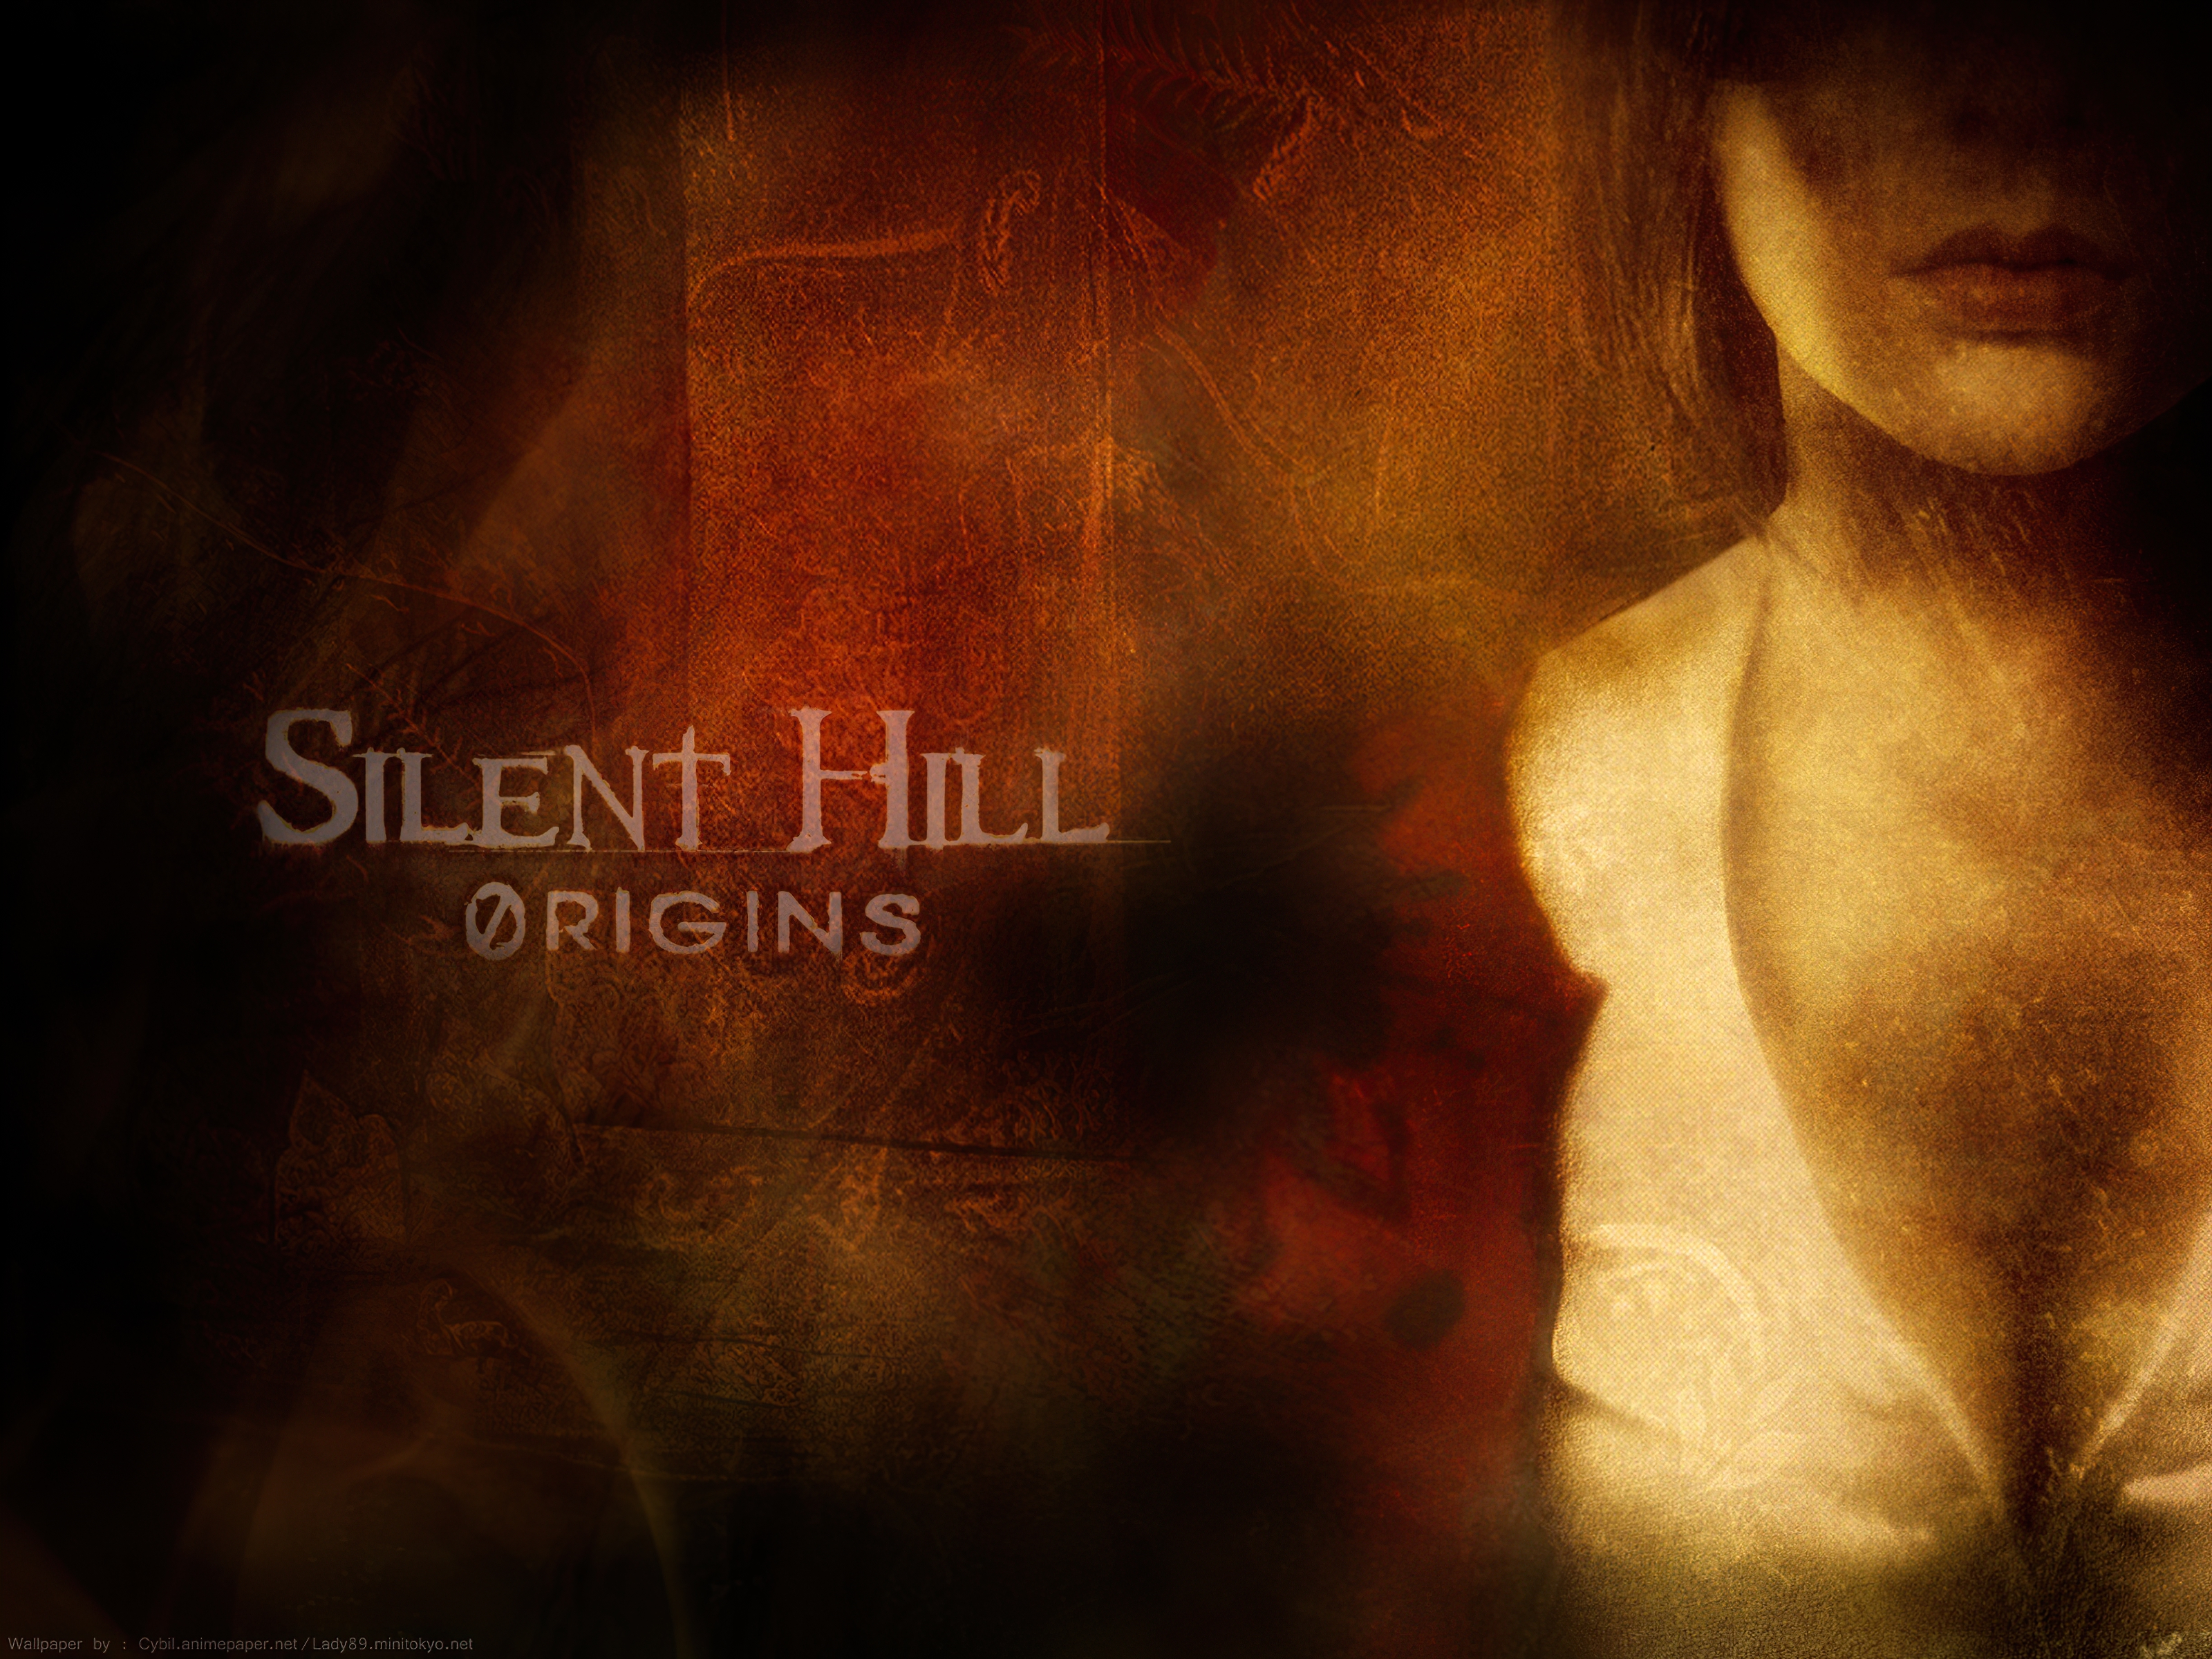 silent hill zero